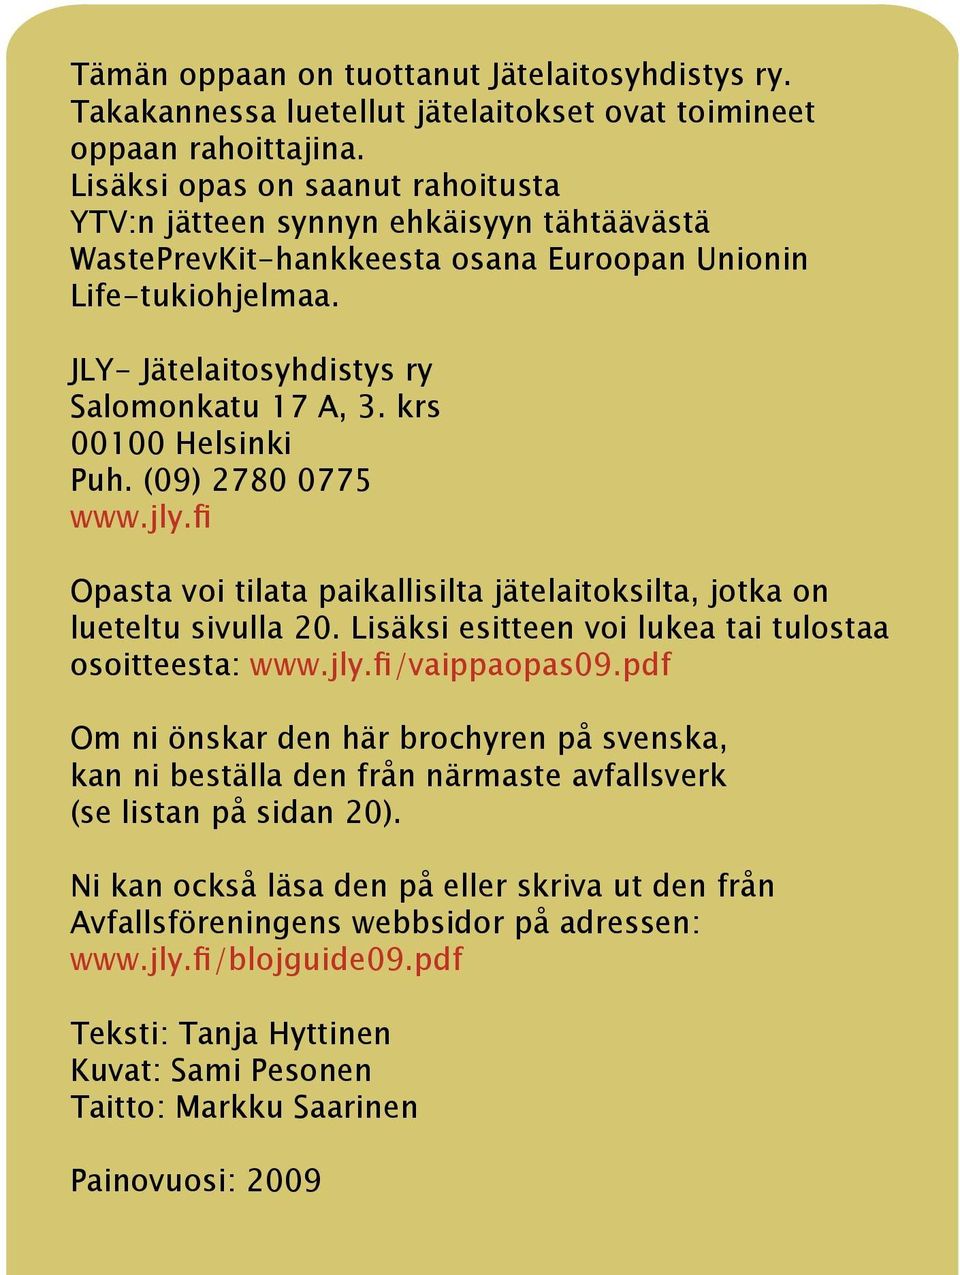 krs 00100 Helsinki Puh. (09) 2780 0775 www.jly.fi Opasta voi tilata paikallisilta jätelaitoksilta, jotka on lueteltu sivulla 20. Lisäksi esitteen voi lukea tai tulostaa osoitteesta: www.jly.fi/vaippaopas09.